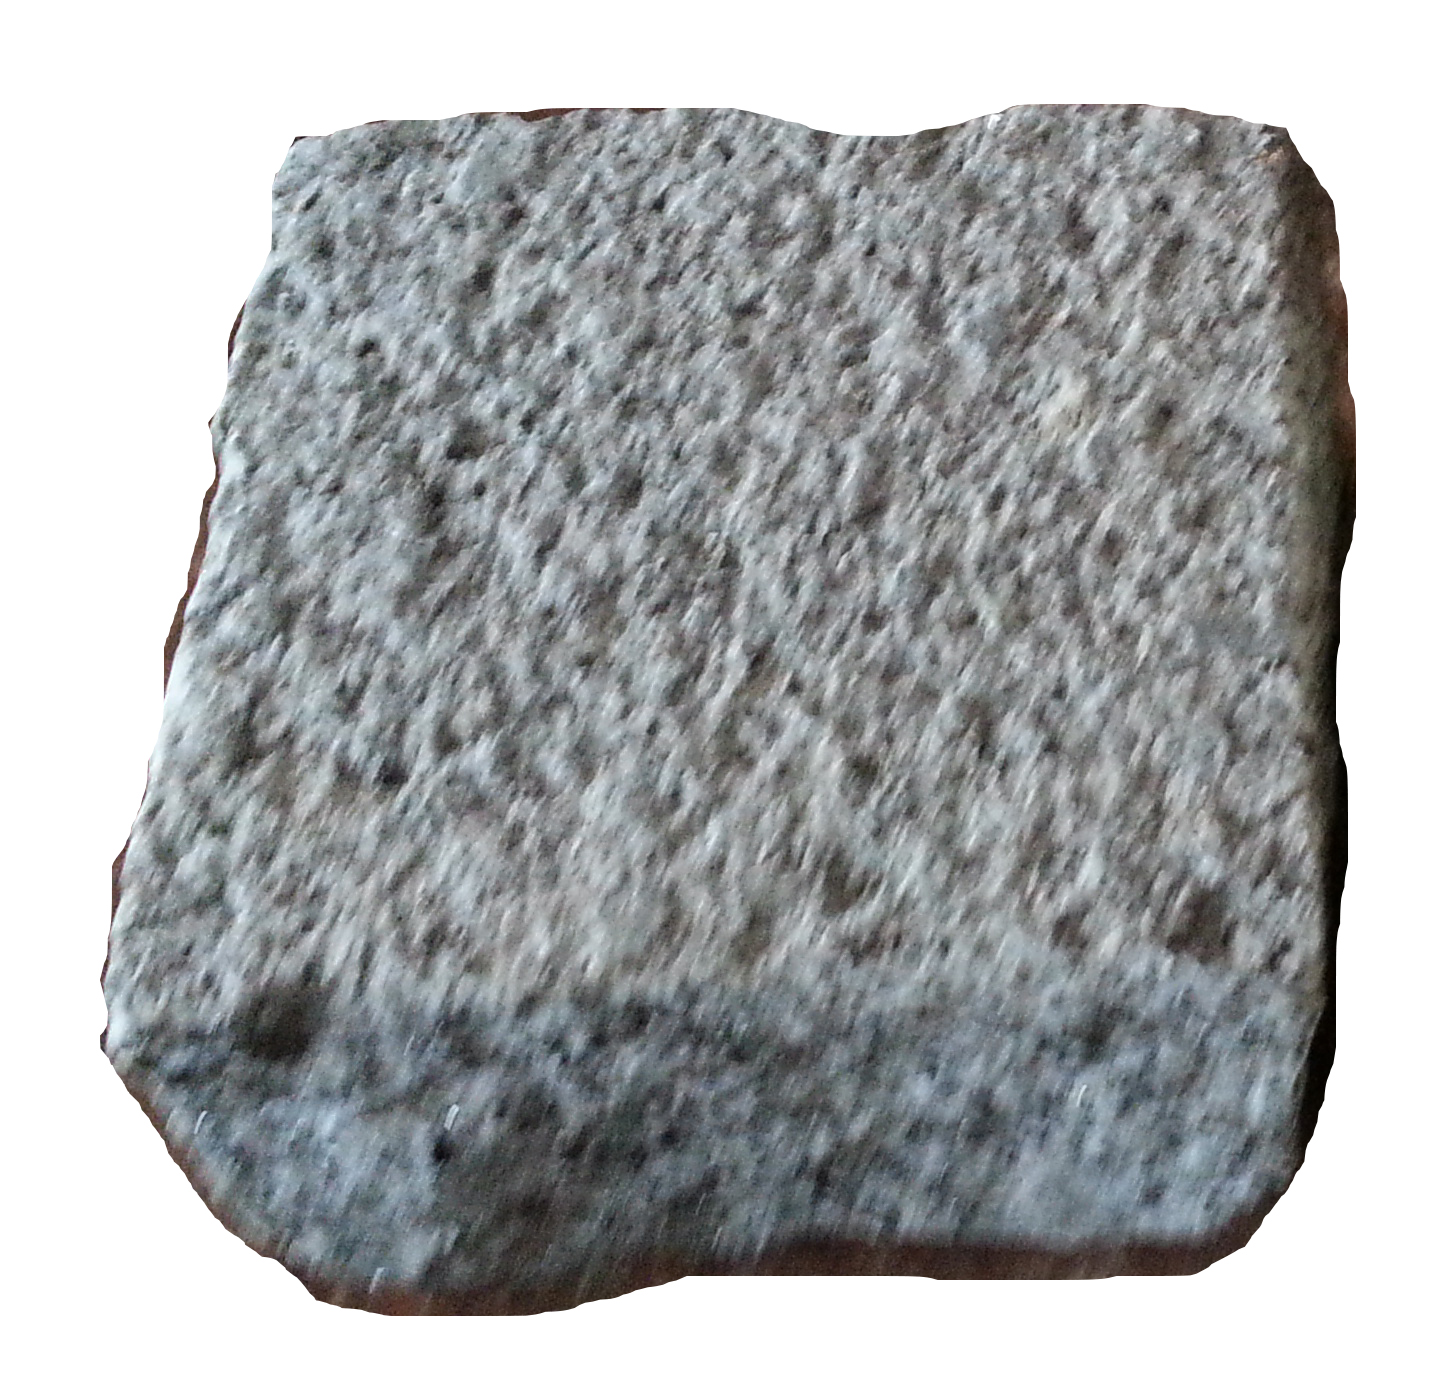 pavé granit surfacé 1 face existe également dans nos 5 coloris de granit naturel